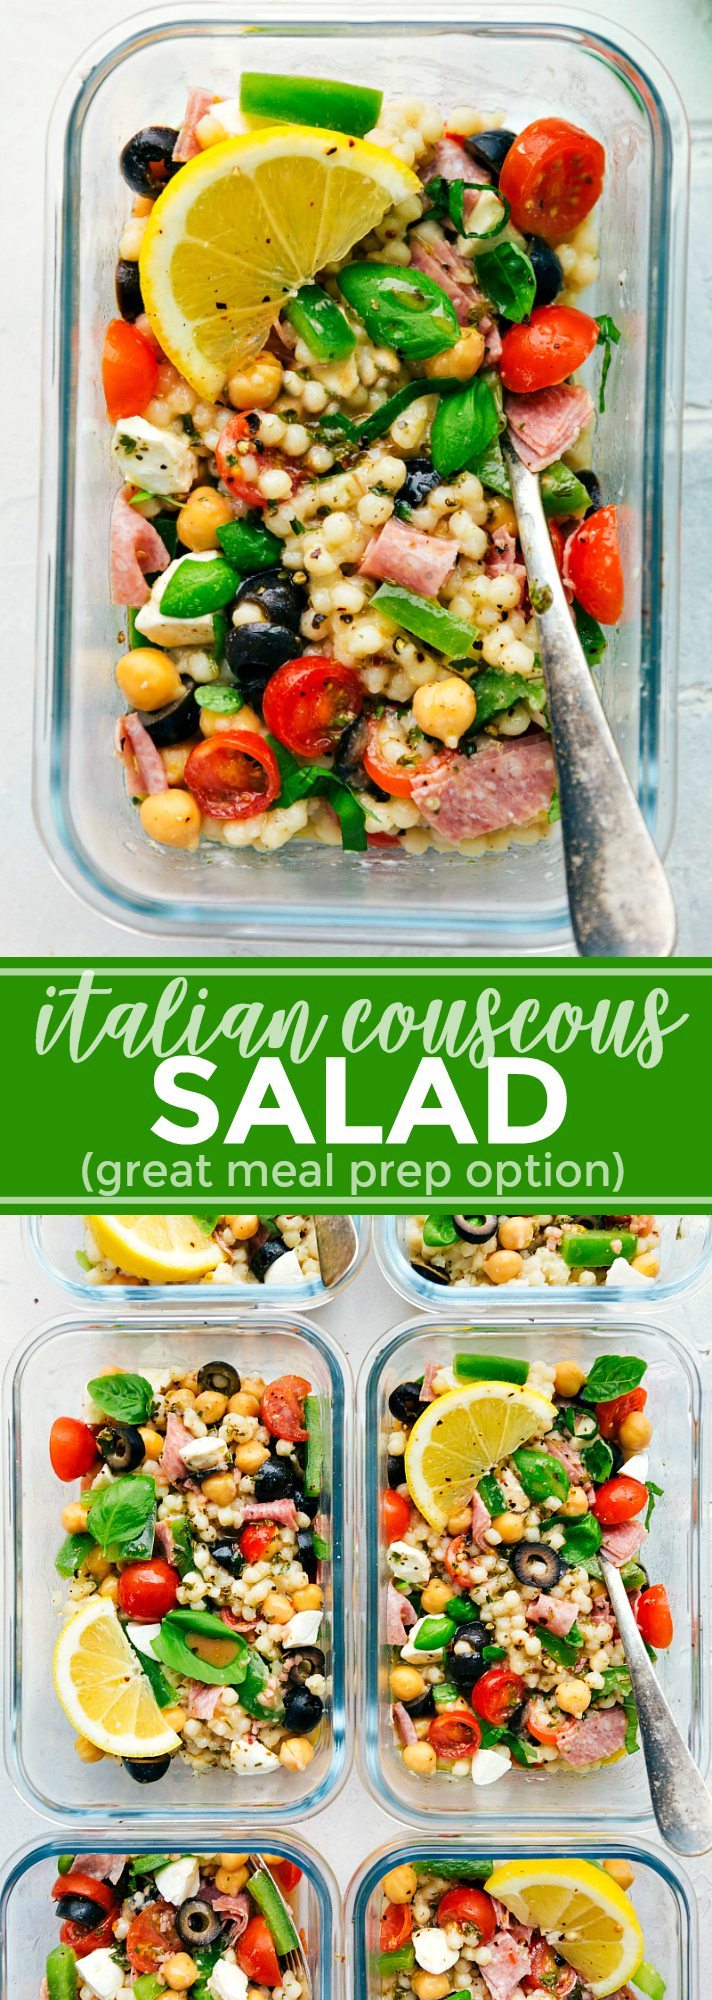 Greek Couscous Salad (Meal Prep Option) - Chelsea's Messy Apron